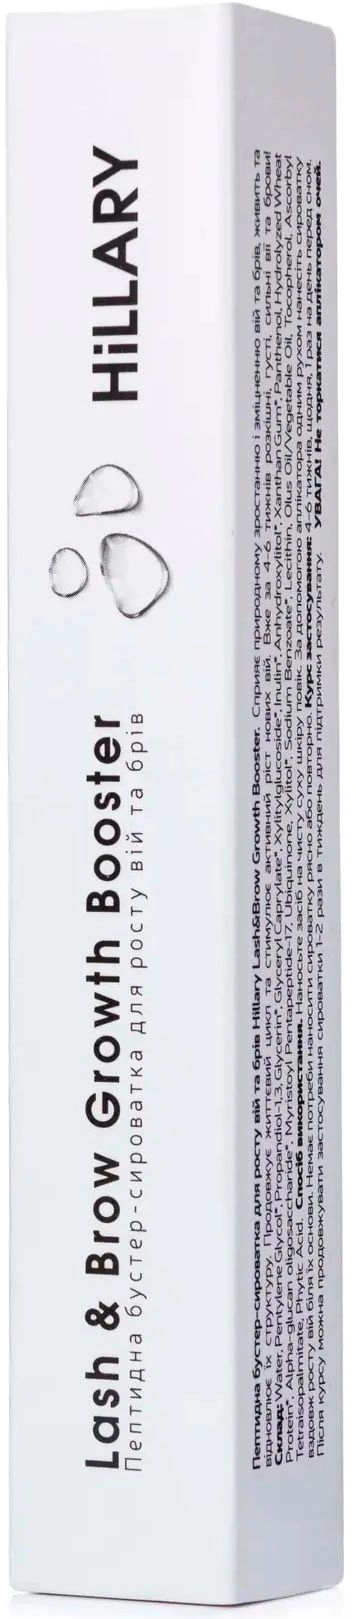 Пептидная бустер-сыворотка для роста ресниц и бровей - Hillary Lash&Brow Growth Booster, 3 мл - фото N2